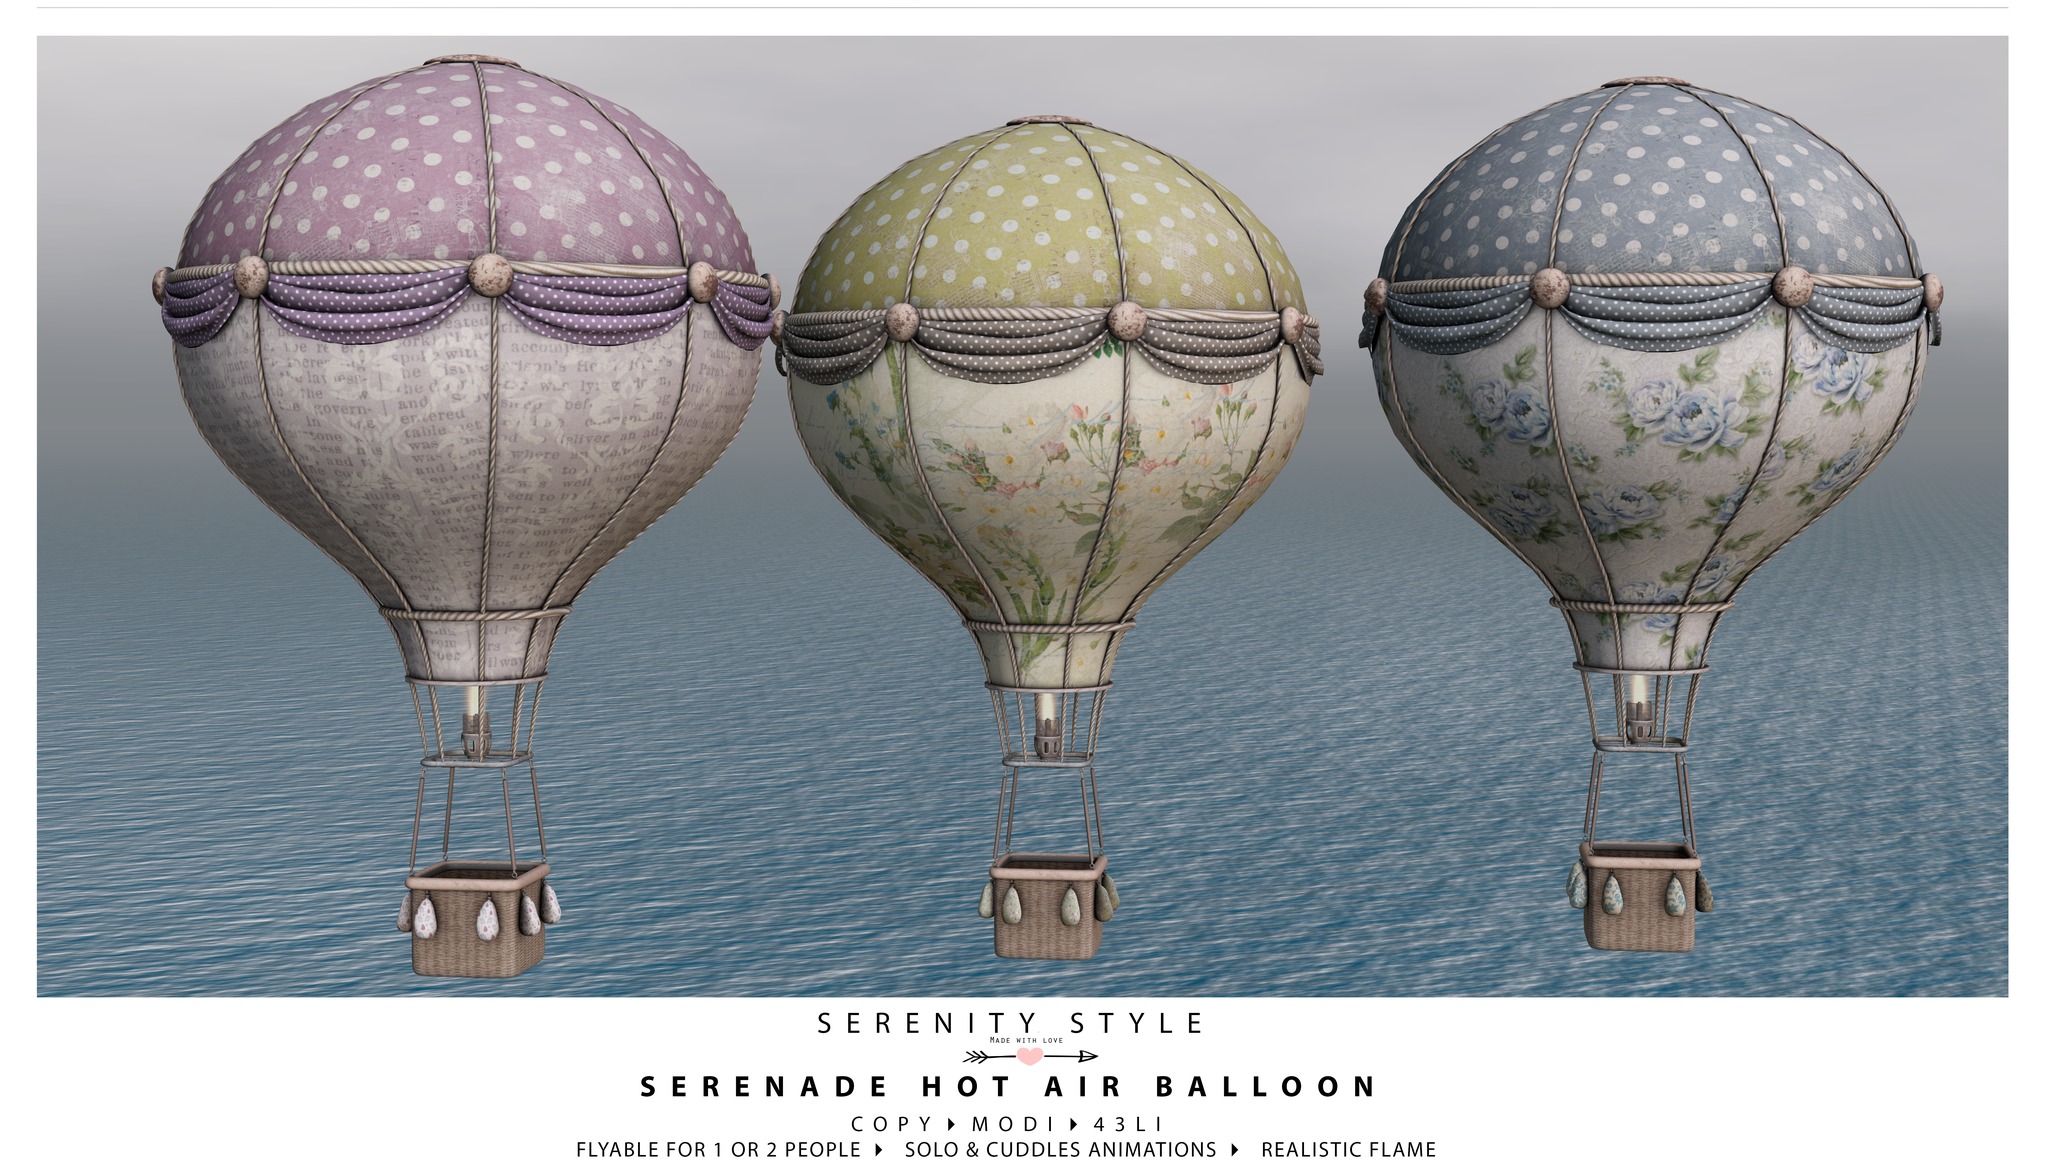 Serenity Style – Serenade Hot Air Balloon